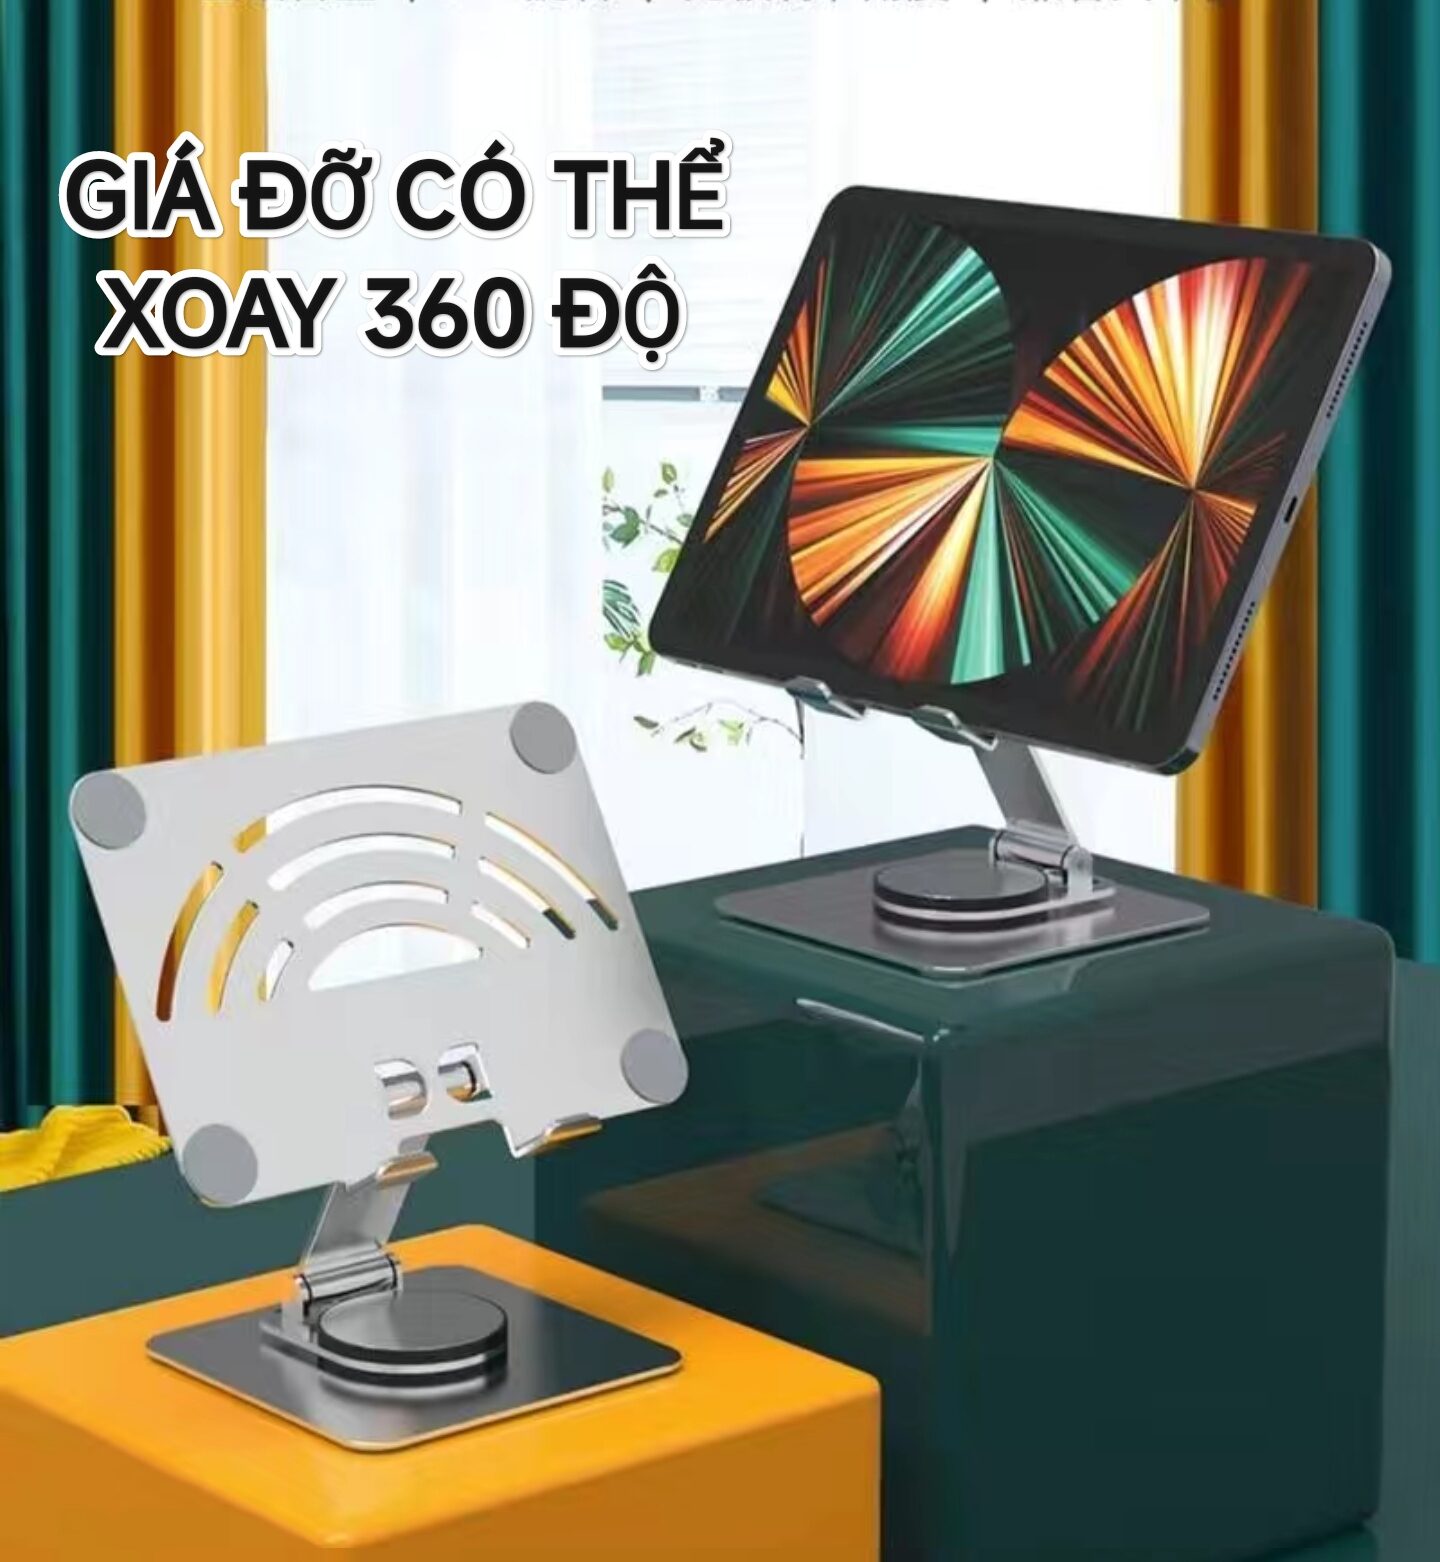 Giá Đỡ Xoay 360 Độ Cho Laptop Máy tính bảng Notebook Macbook Ultrabook Đế